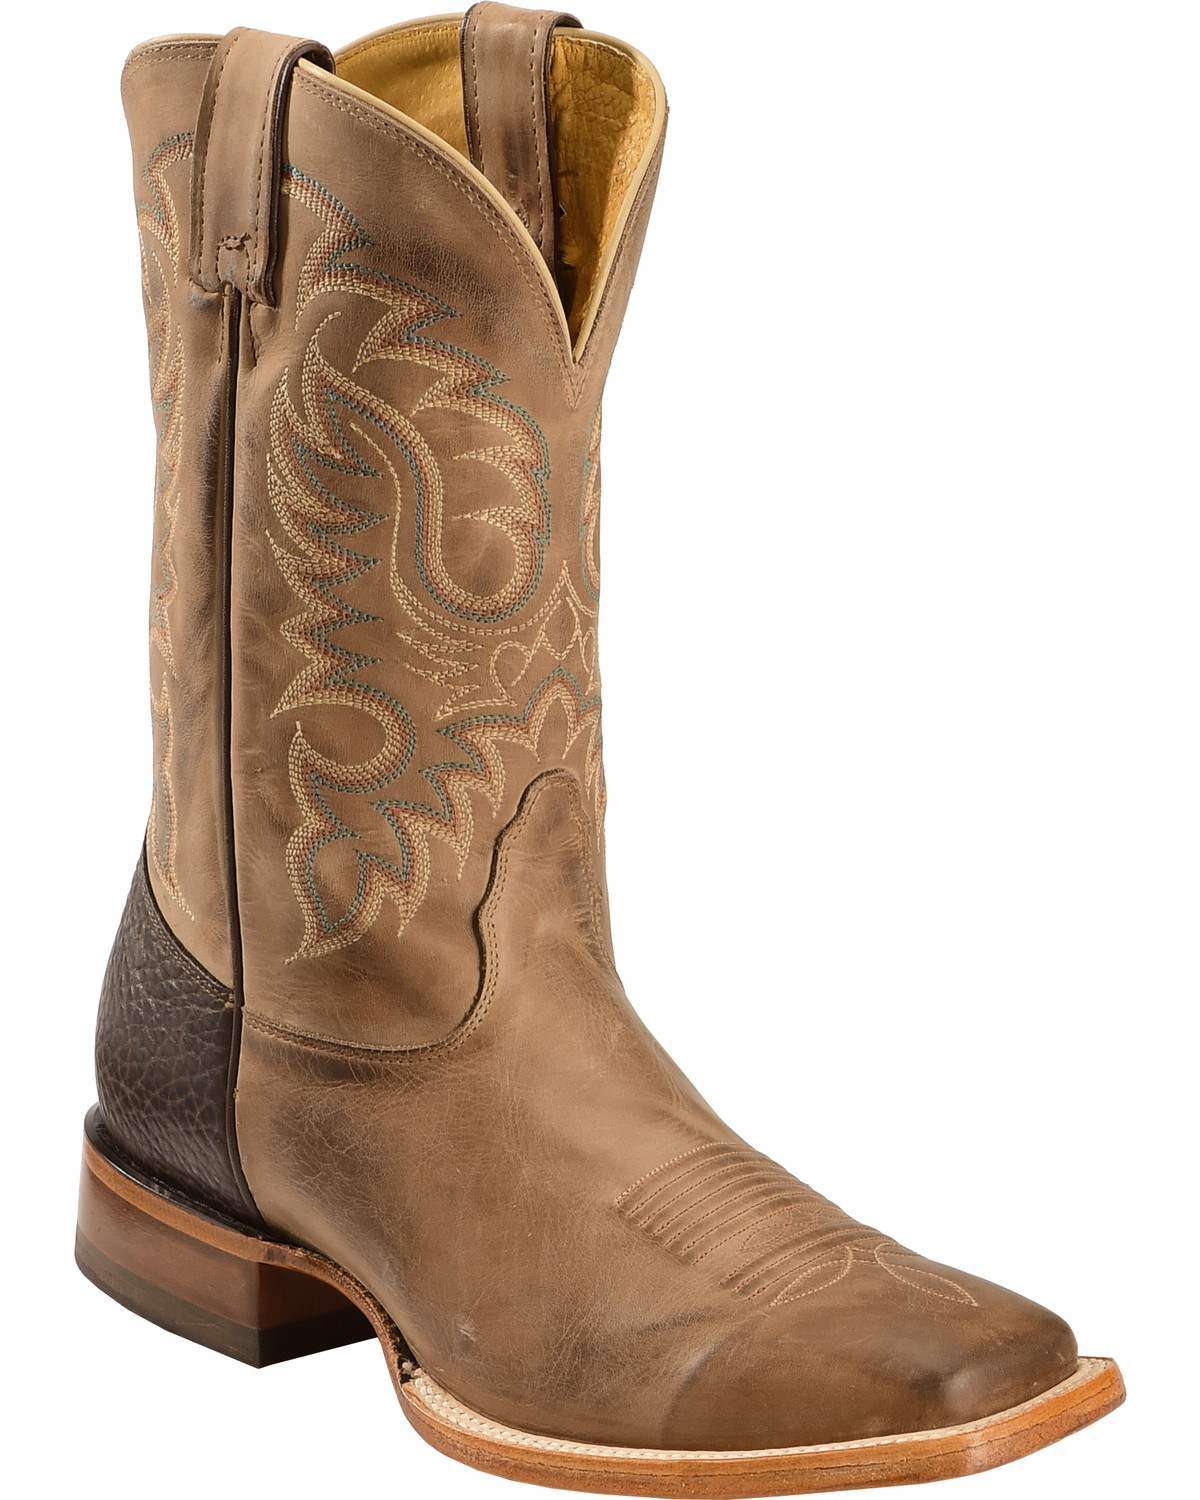 nocona boots nocona legacy series vintage cowboy boot, tan, hi-res GWRGPEY